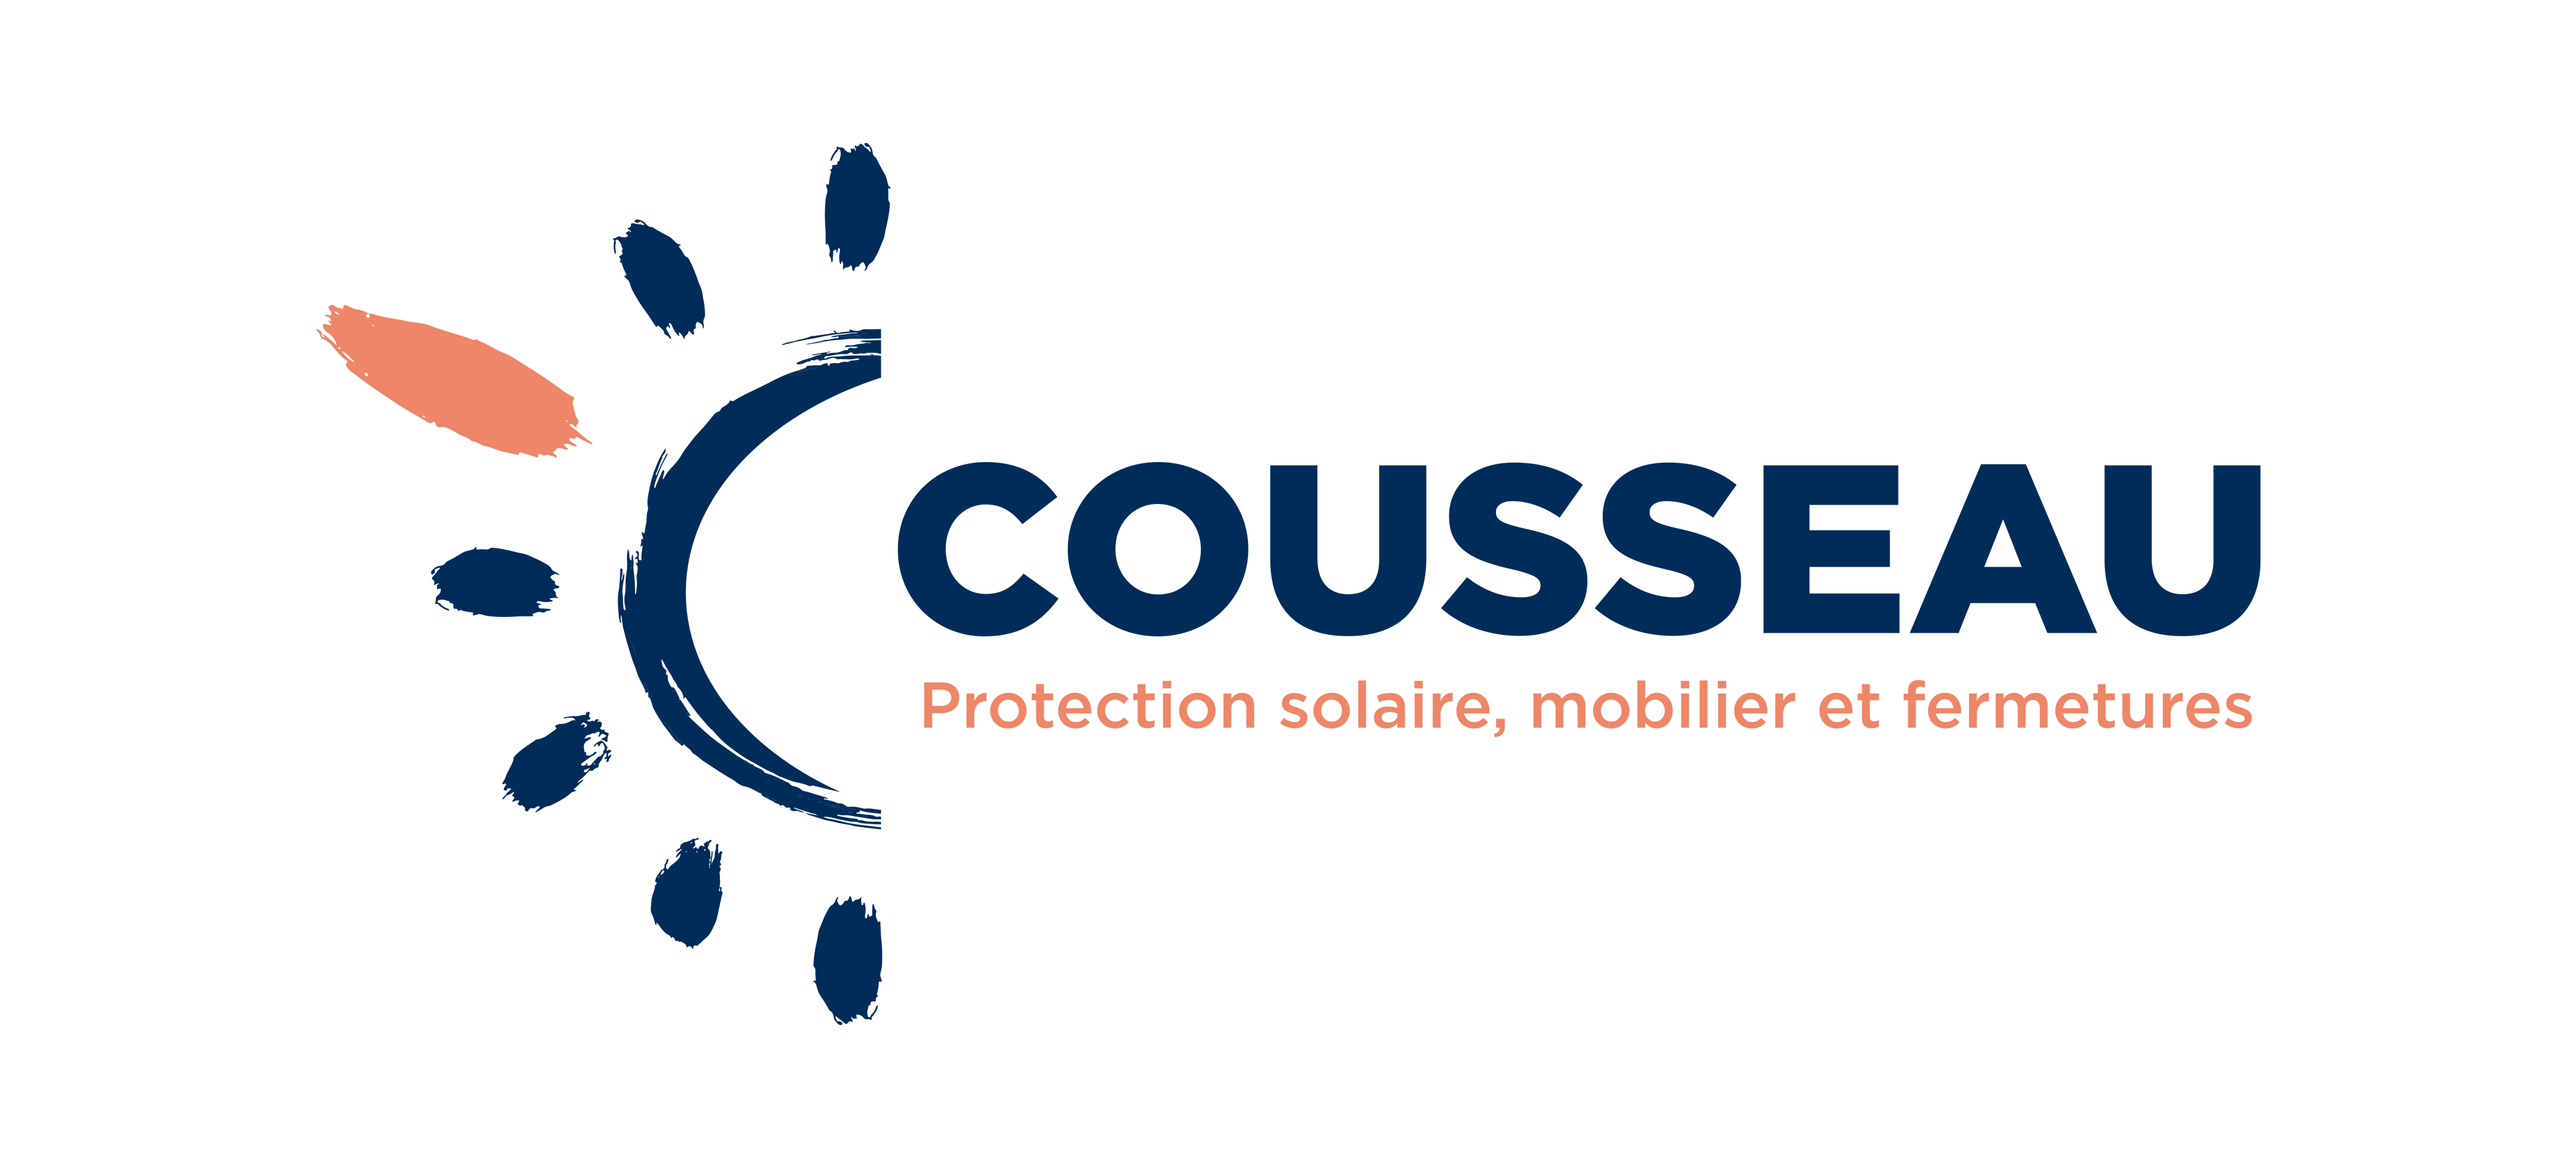 Cousseau - Protection solaire, mobilier & fermetures